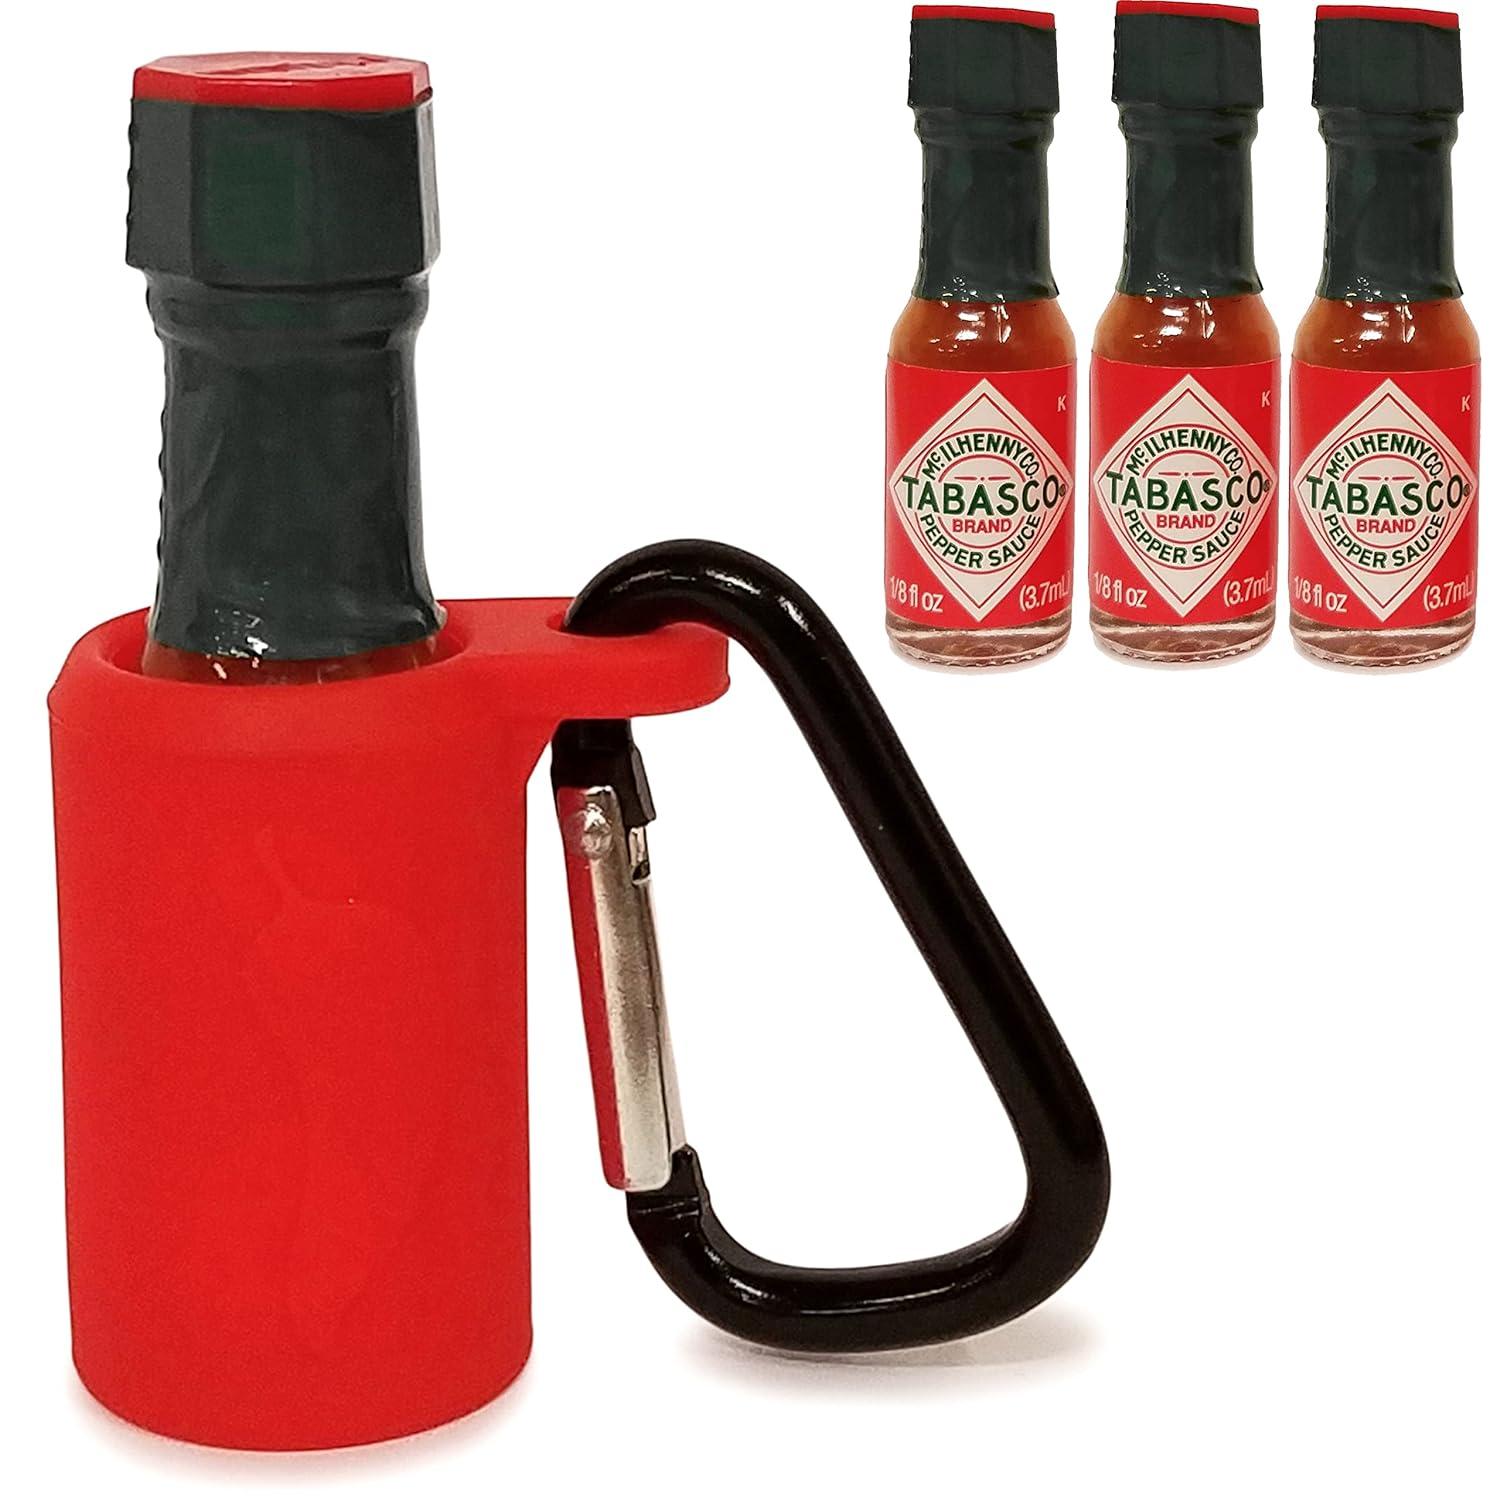 Ein Dreierpack Tabasco-Sauce mit einem Schlüsselanhänger zum Halten der Flasche